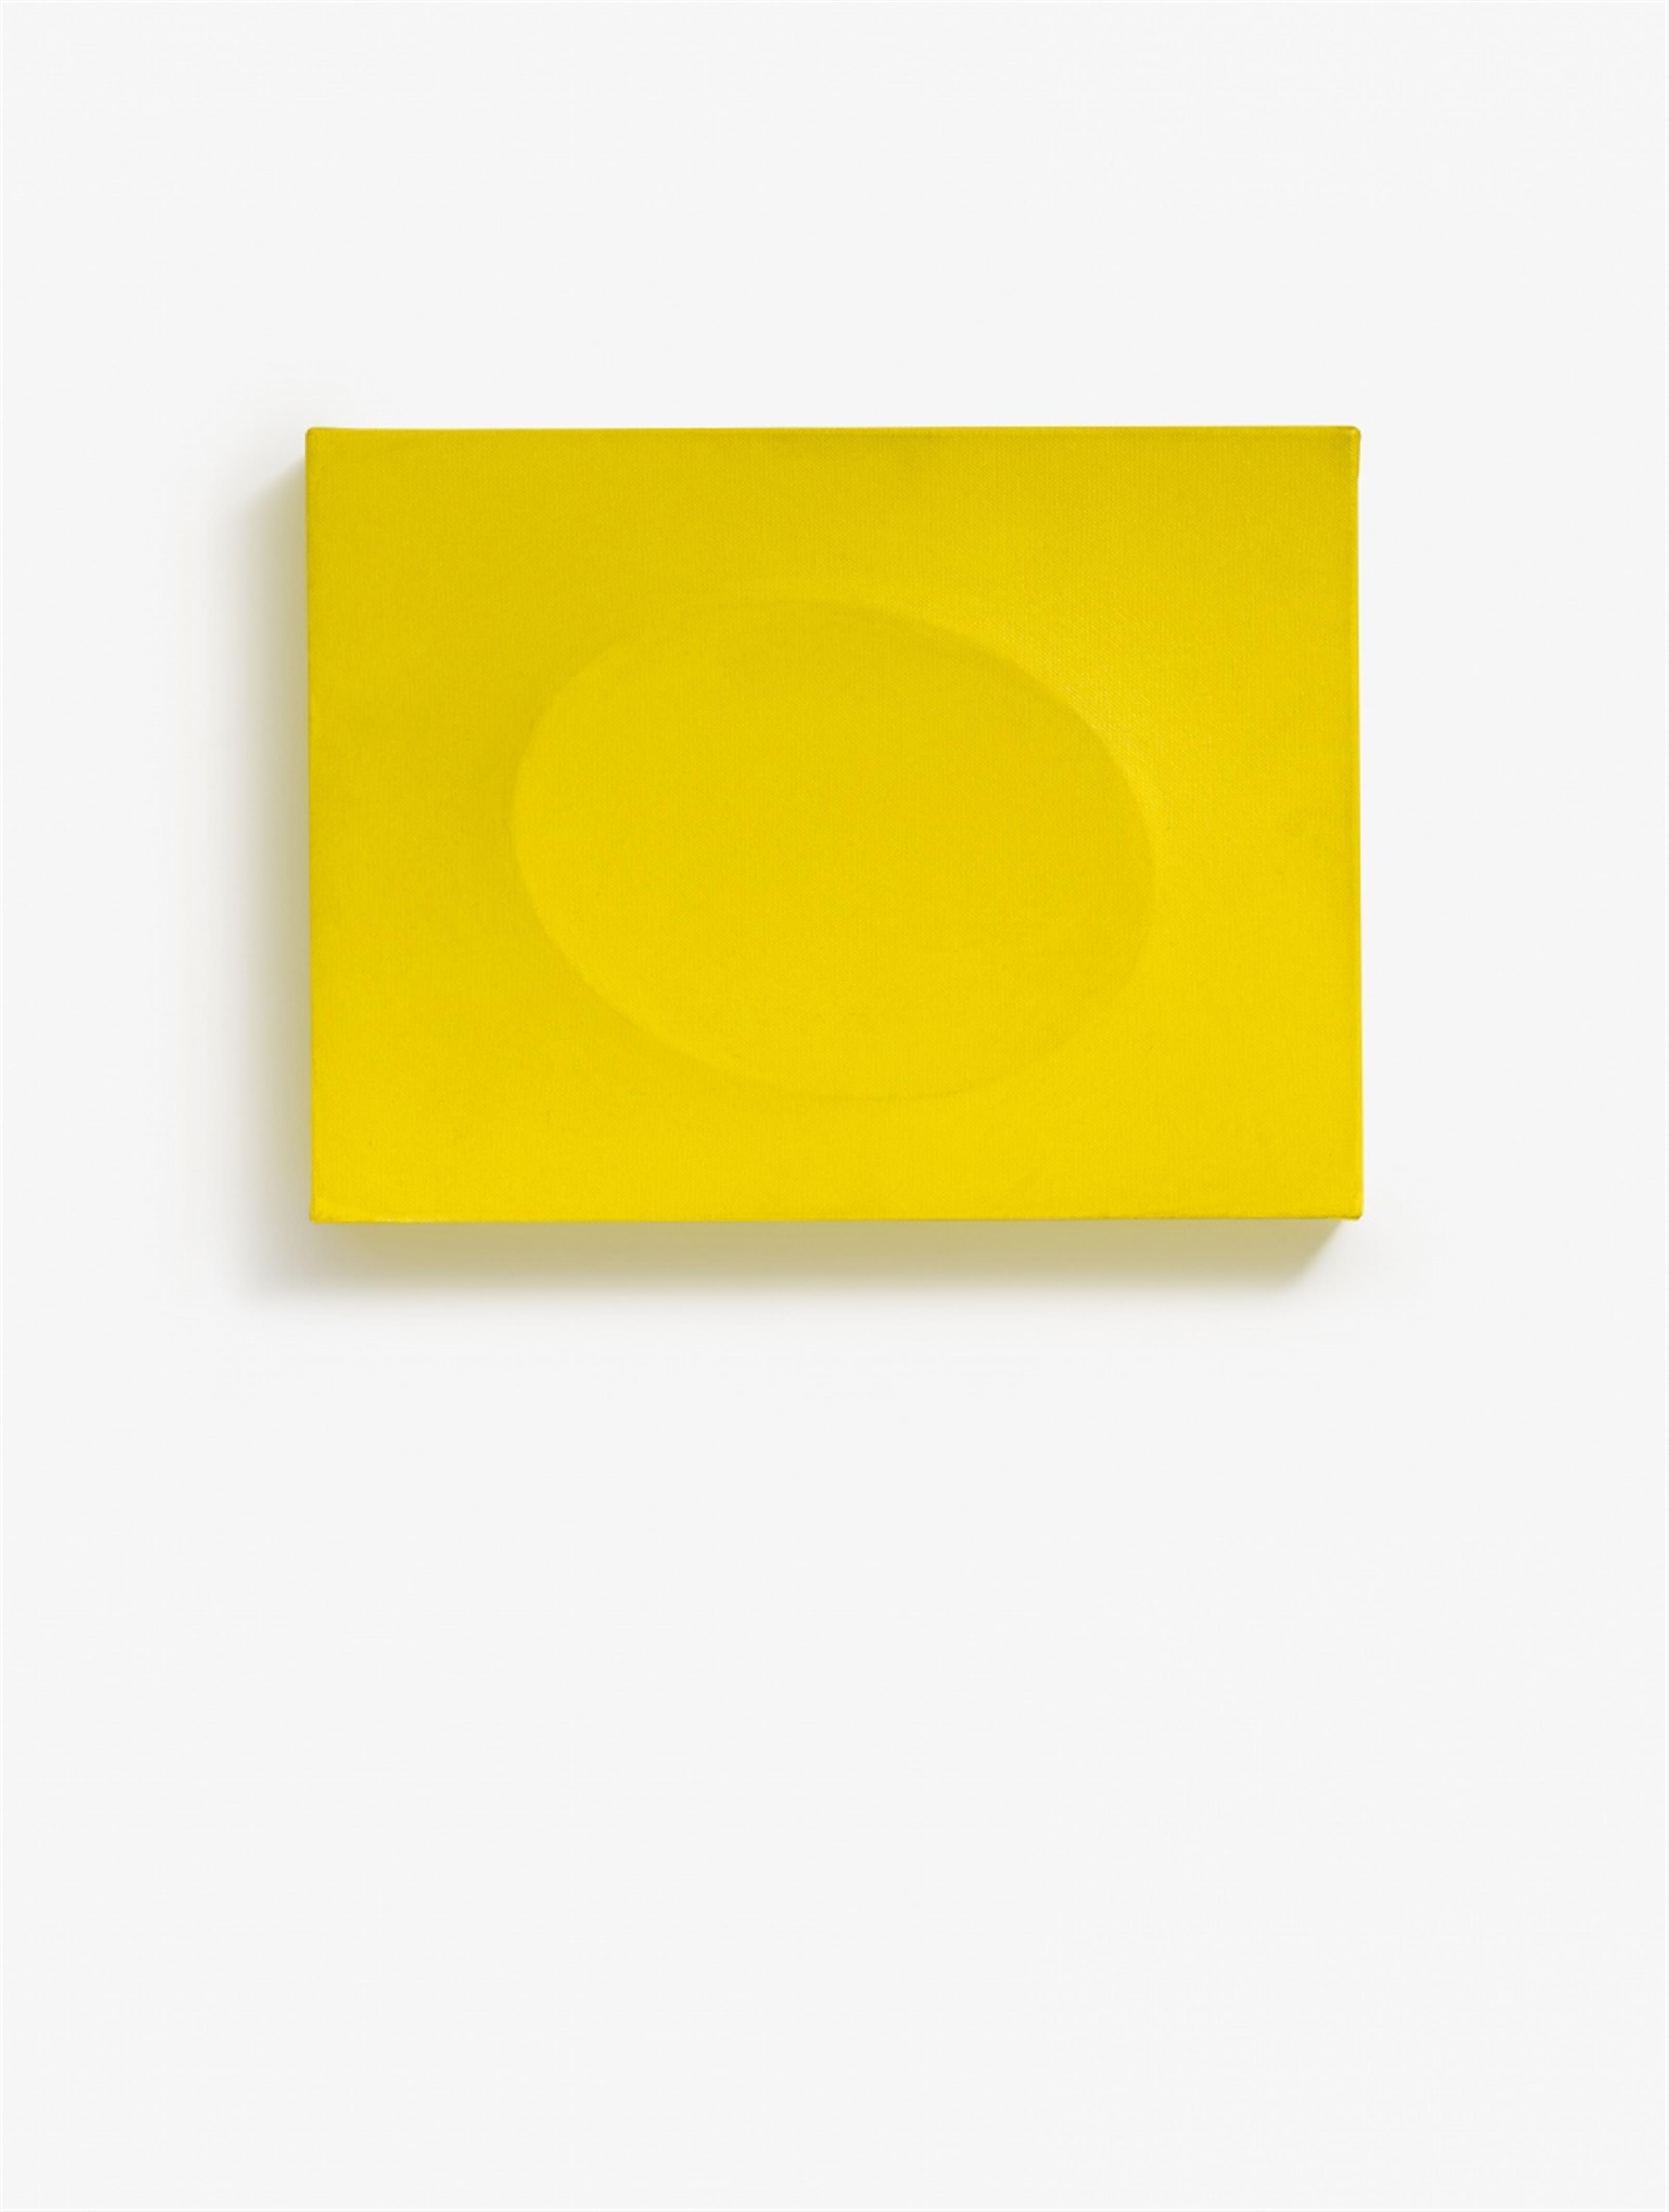 Turi Simeti - Un ovale giallo - image-1